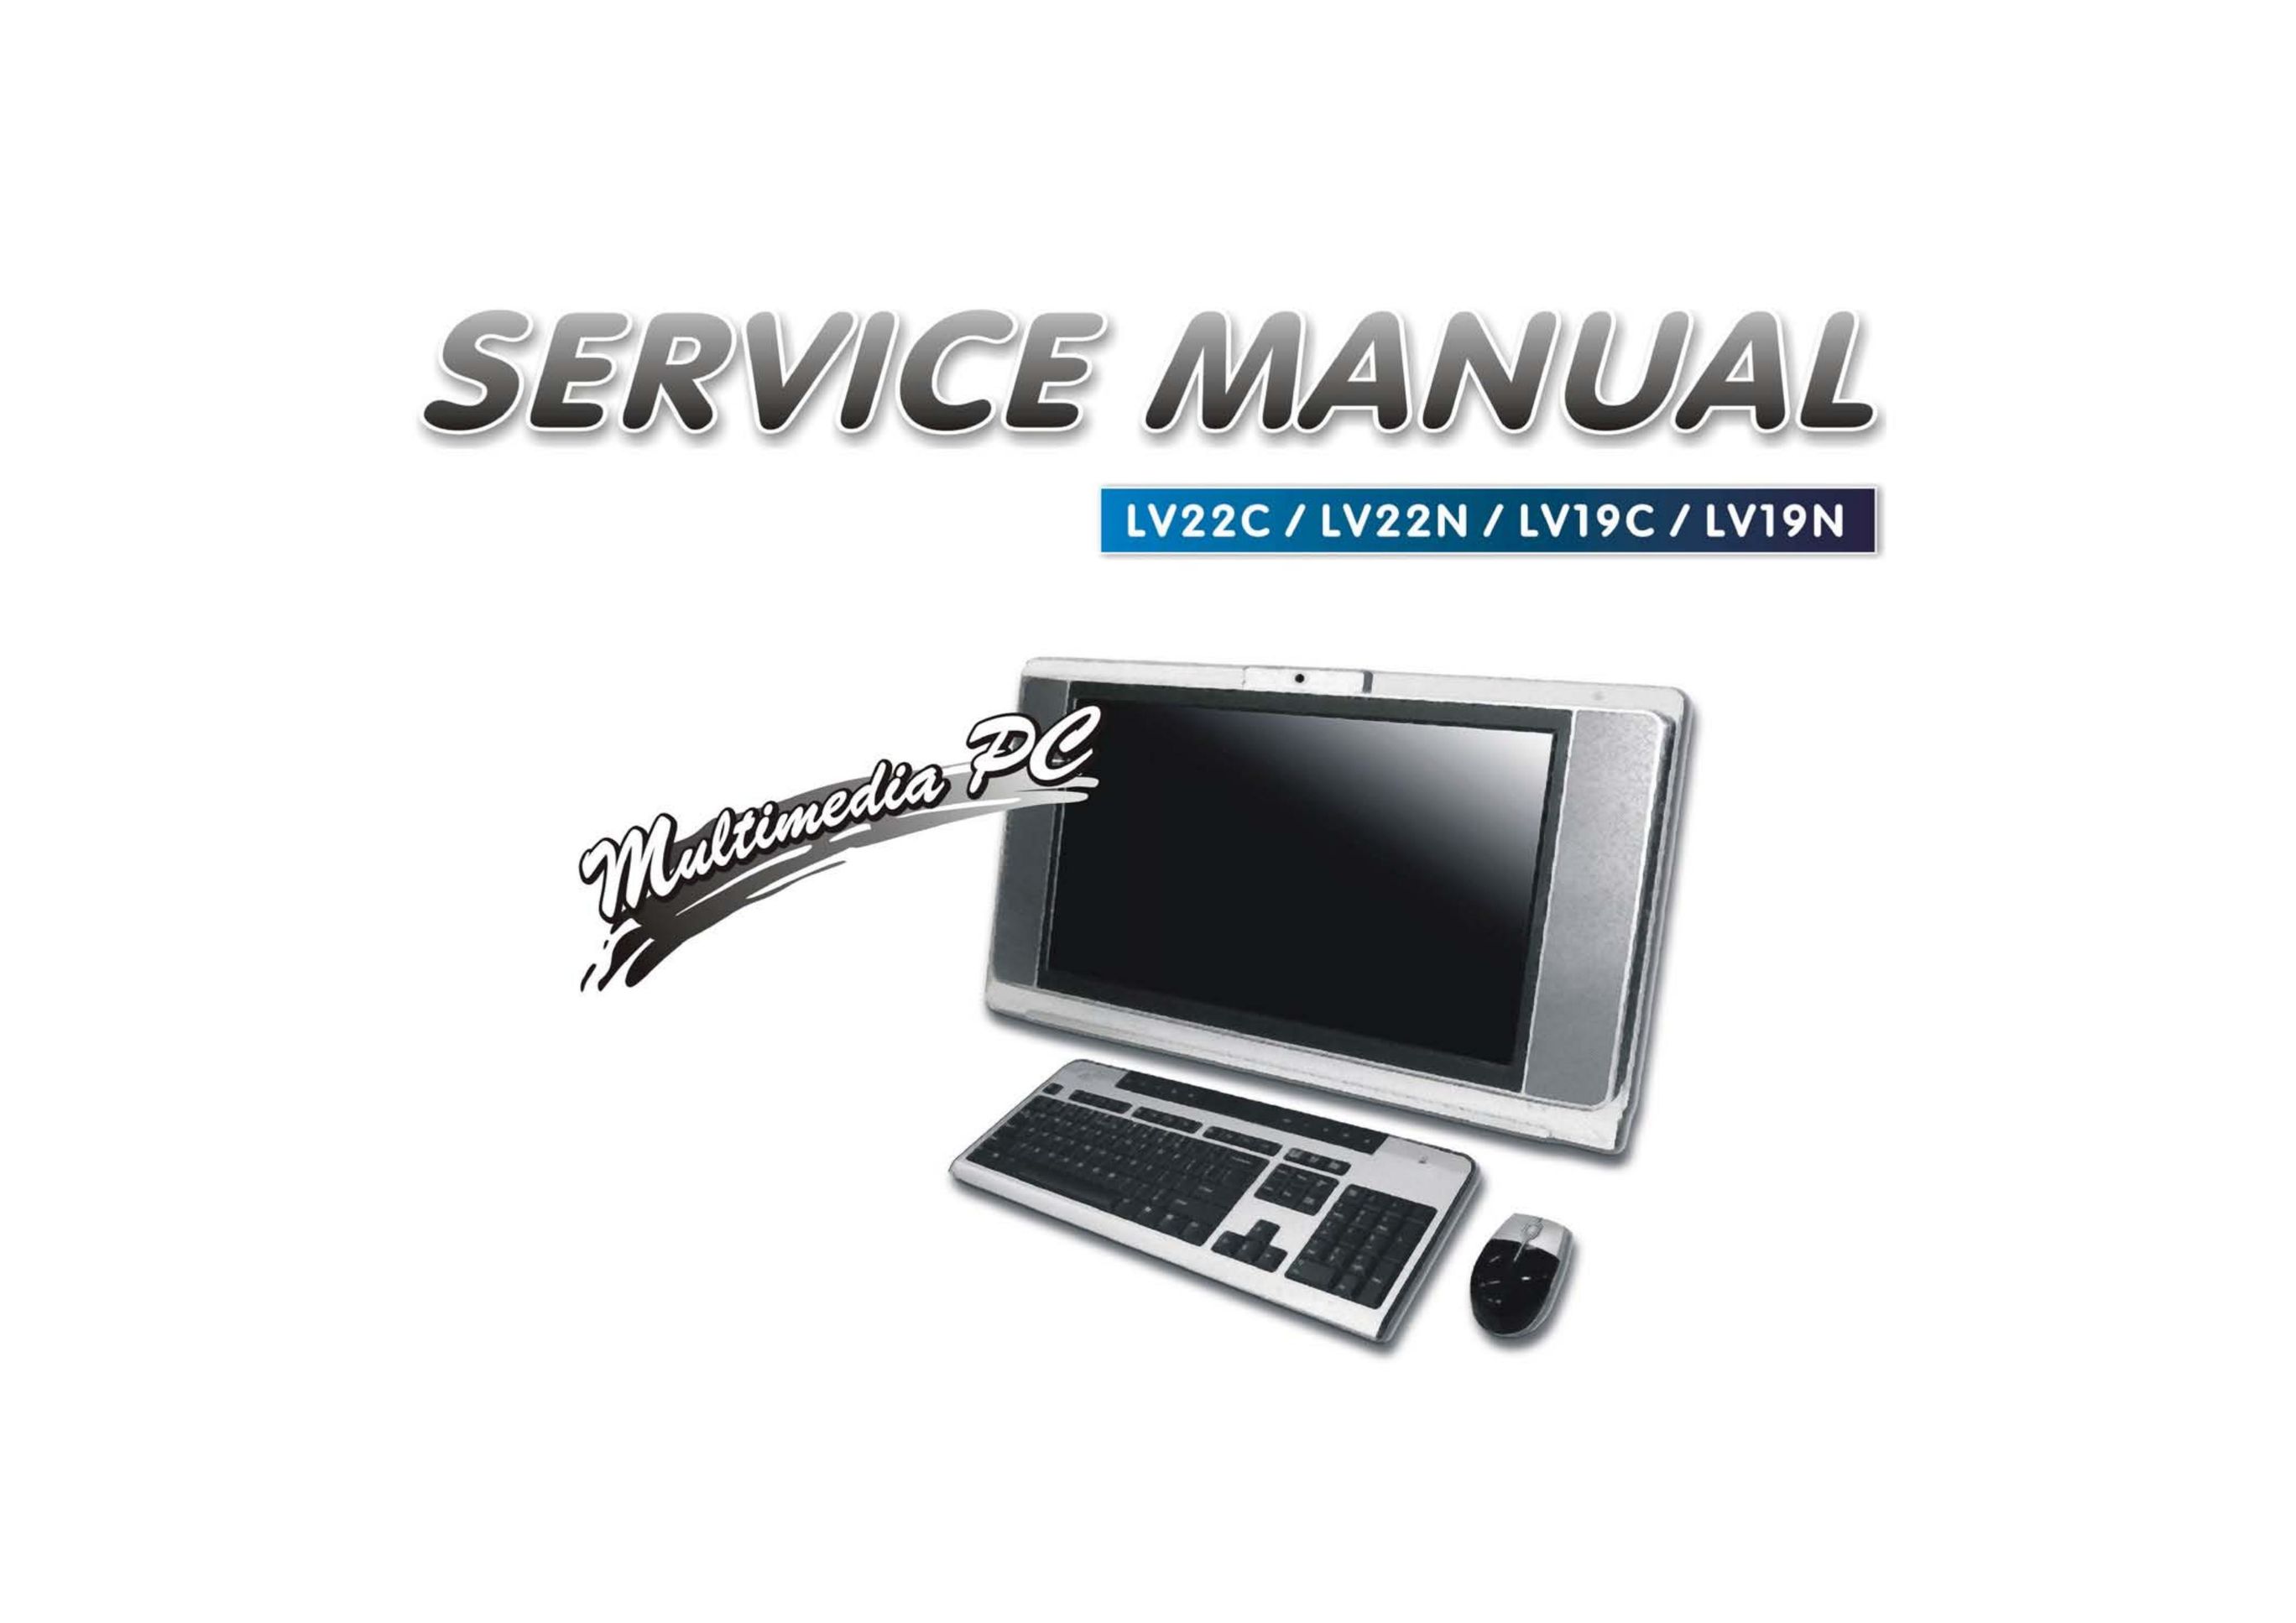 Intel LV22N Series Personal Computer User Manual